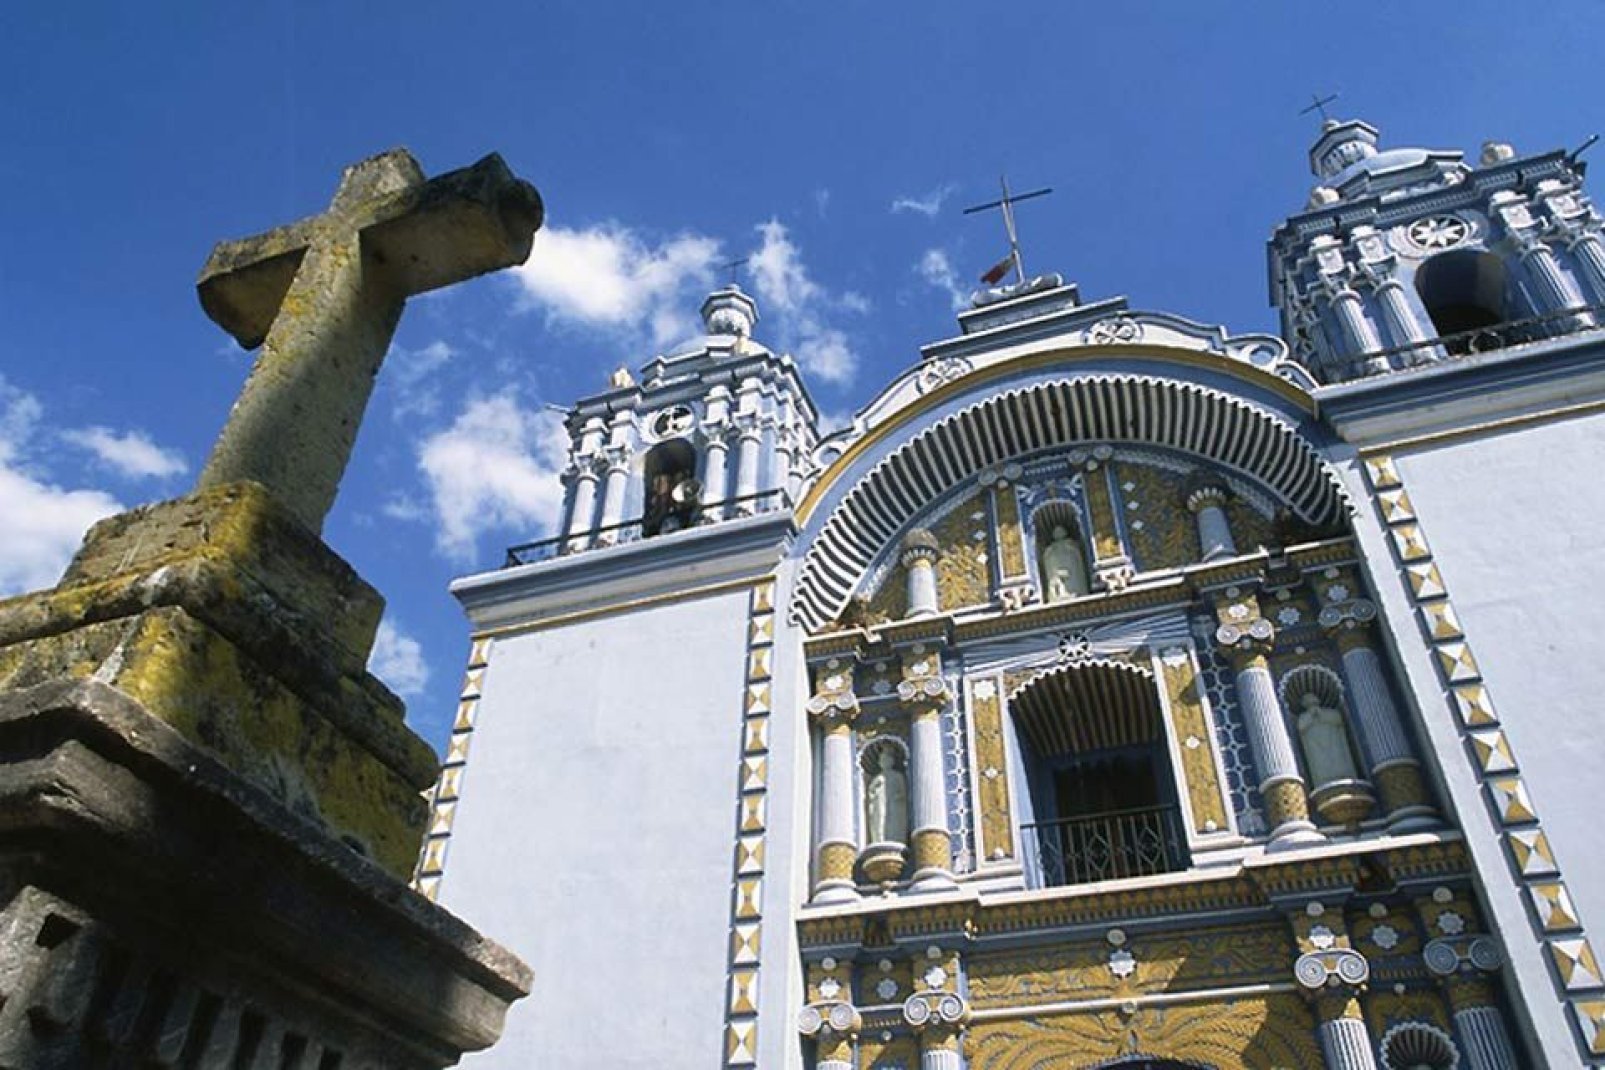 Le numerose chiese e costruzioni barocche attirano un discreto numero di turisti.